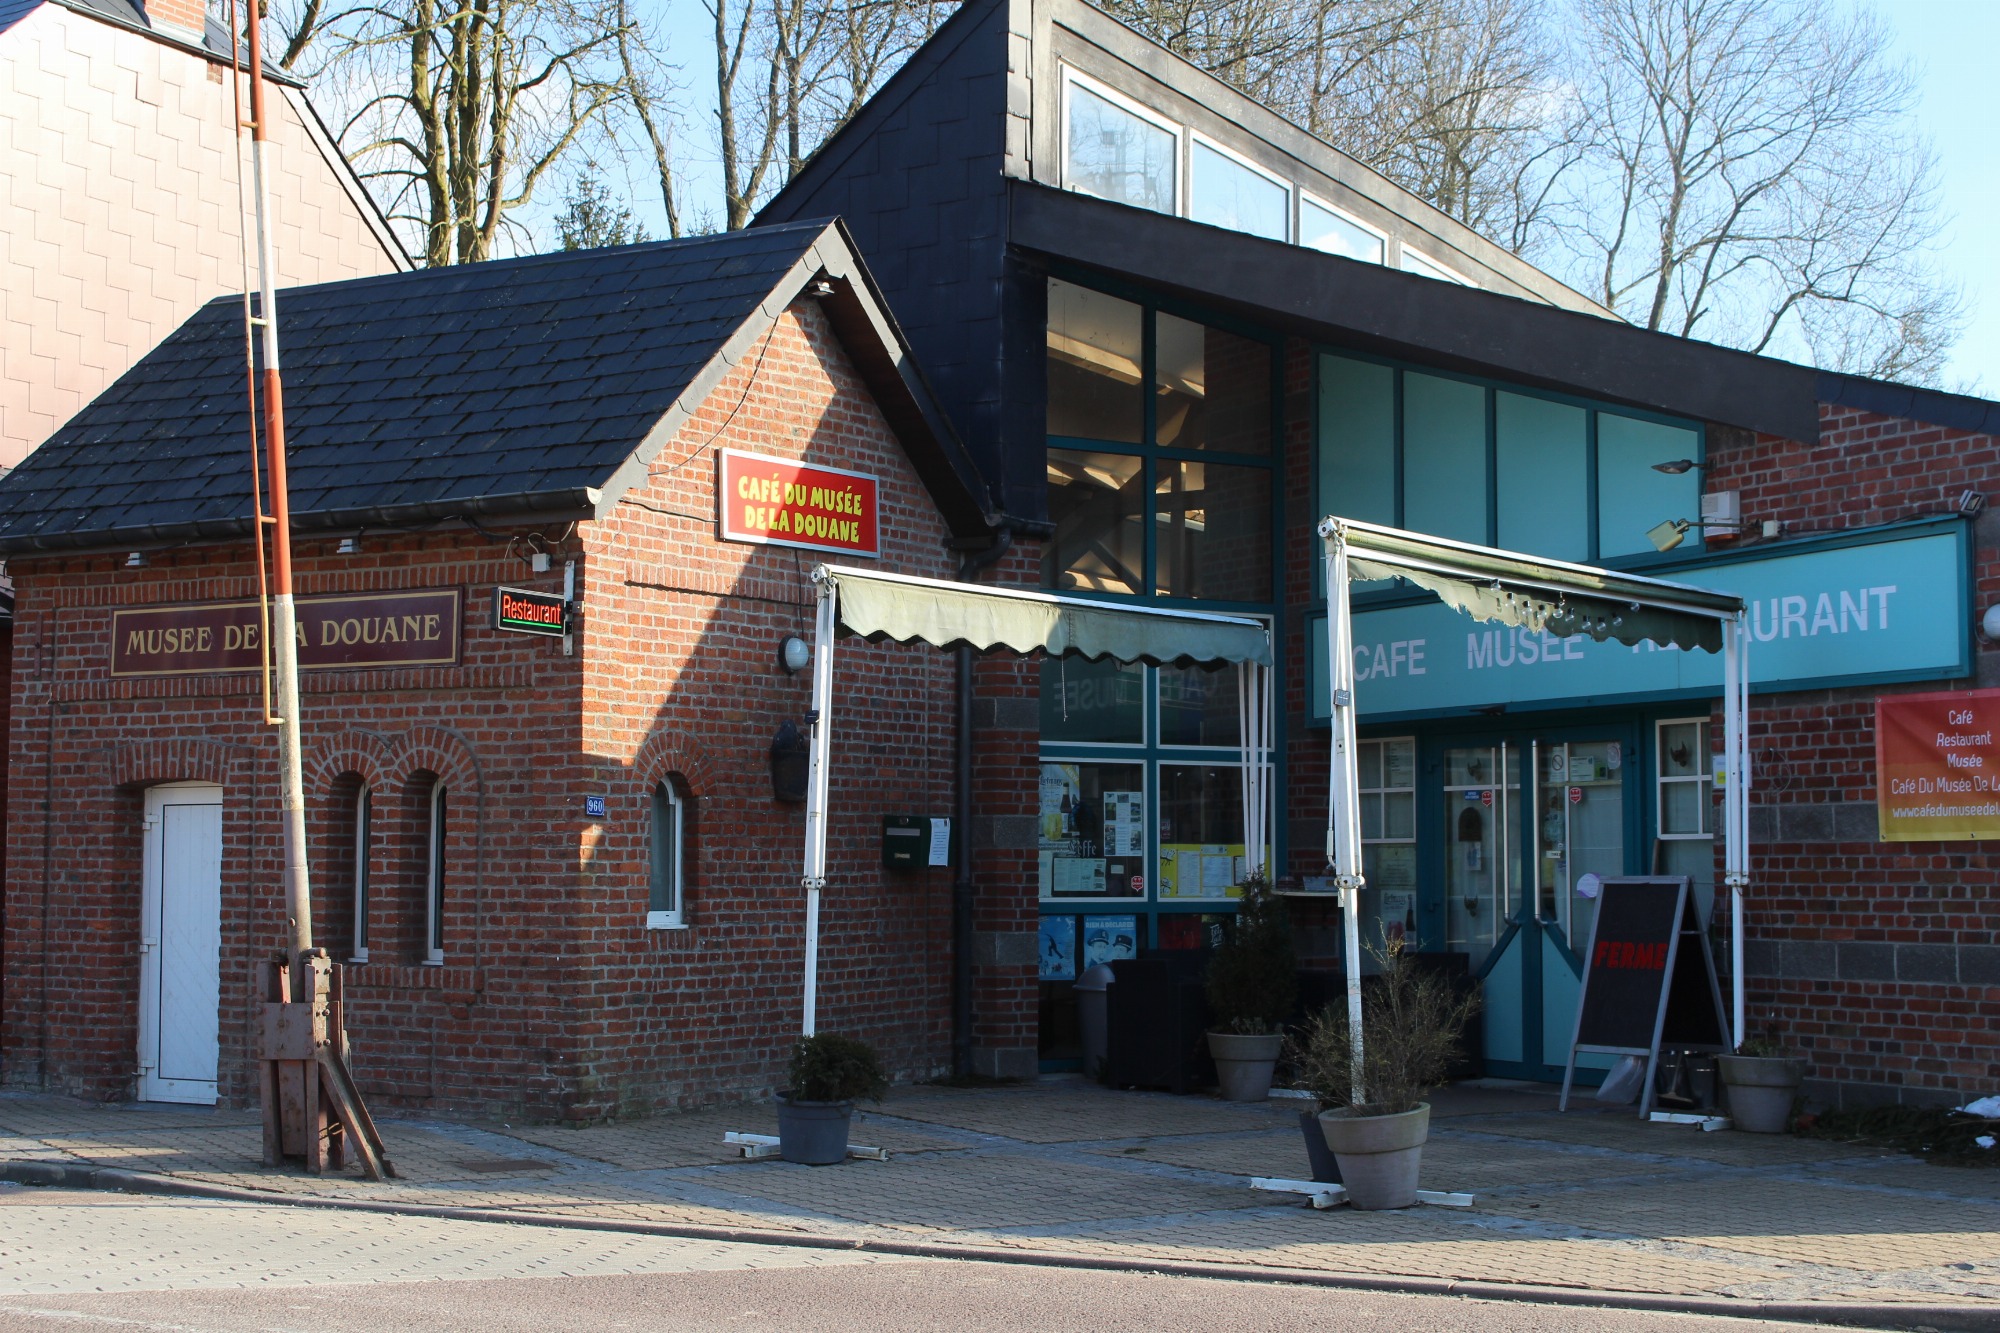 Café du Musée de la douane